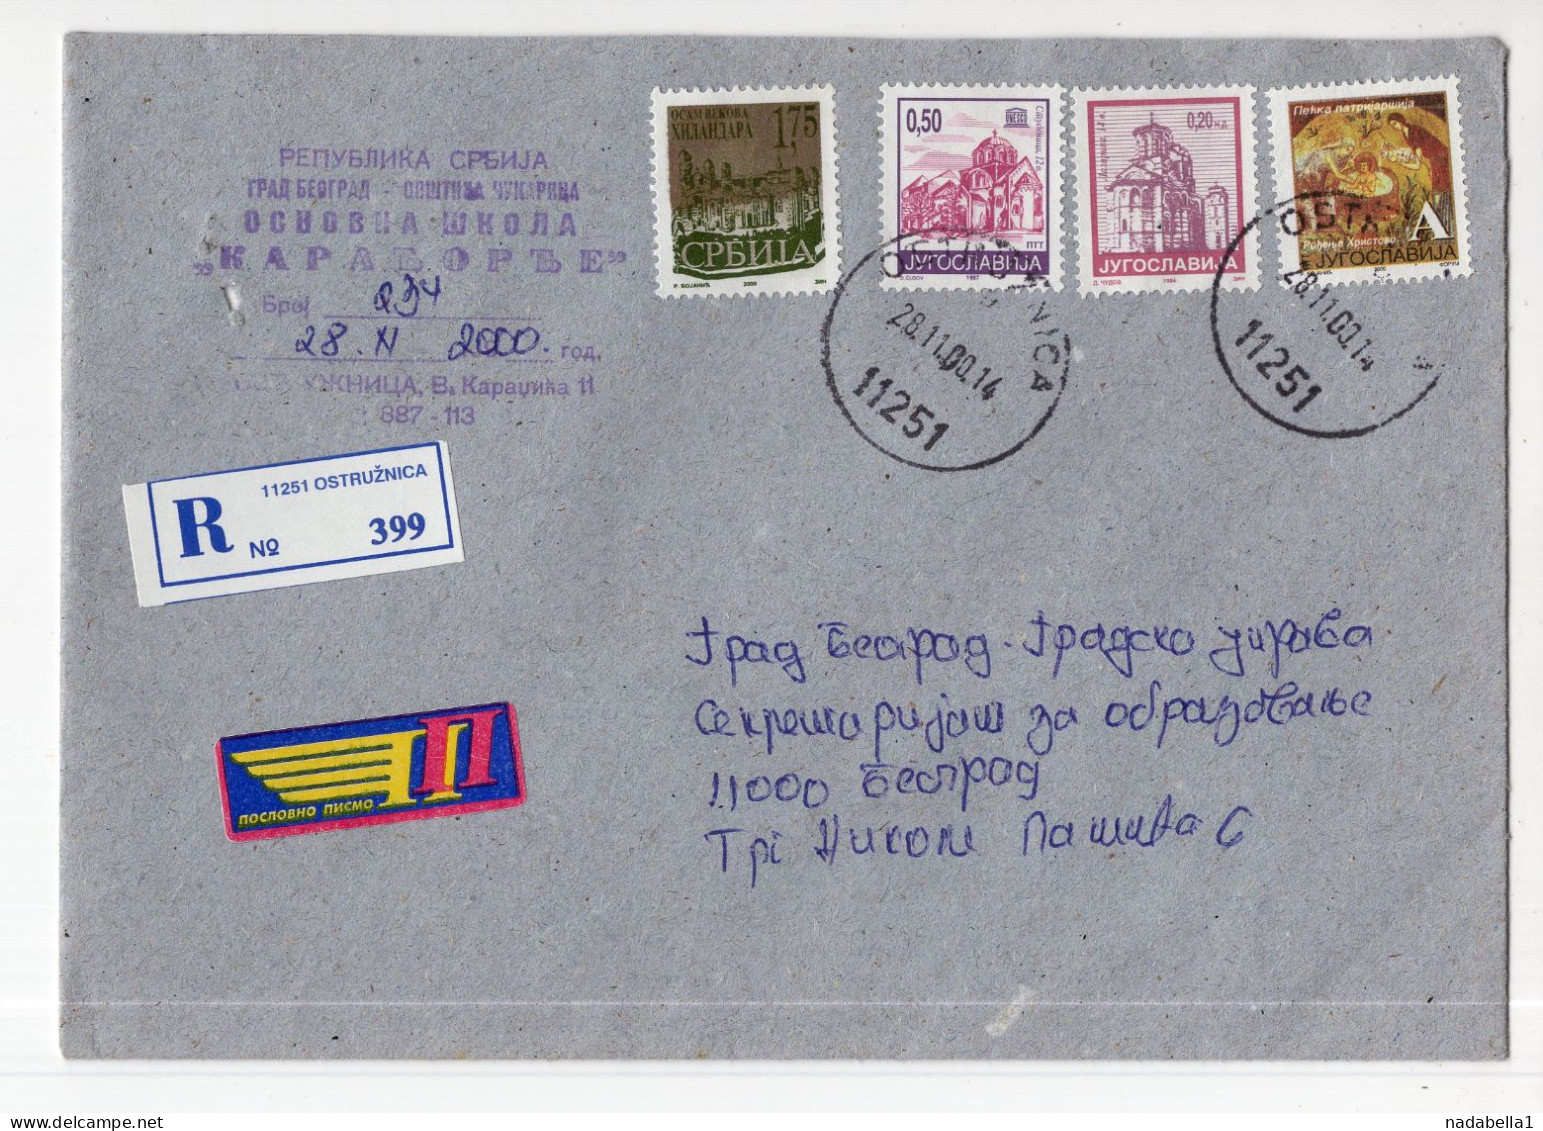 2000. YUGOSLAVIA,SERBIA,OSTRUZNICA,COVER,4 SERBIAN MONASTERY STAMPS - Briefe U. Dokumente